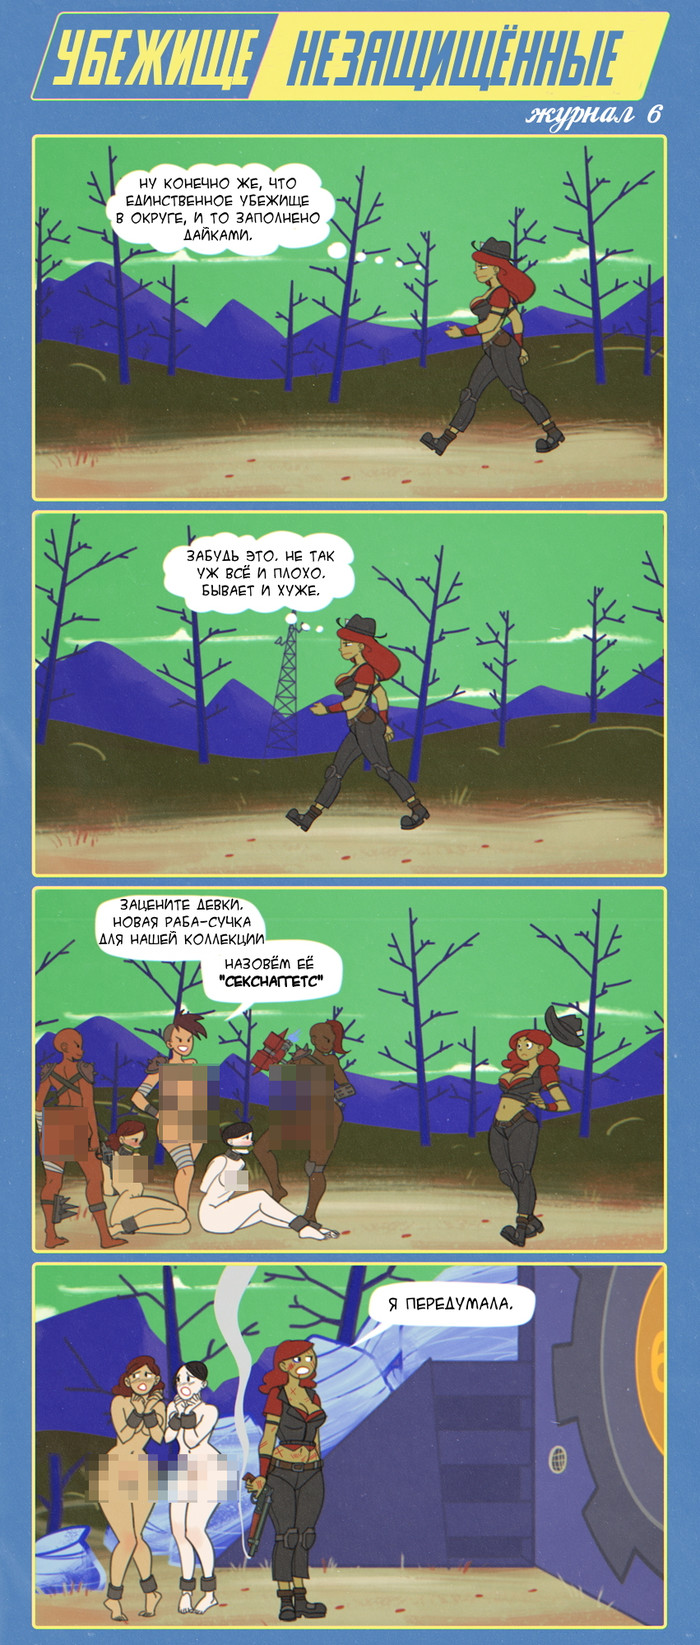 хьюбрис комикс fallout 4 комиксы фото 25